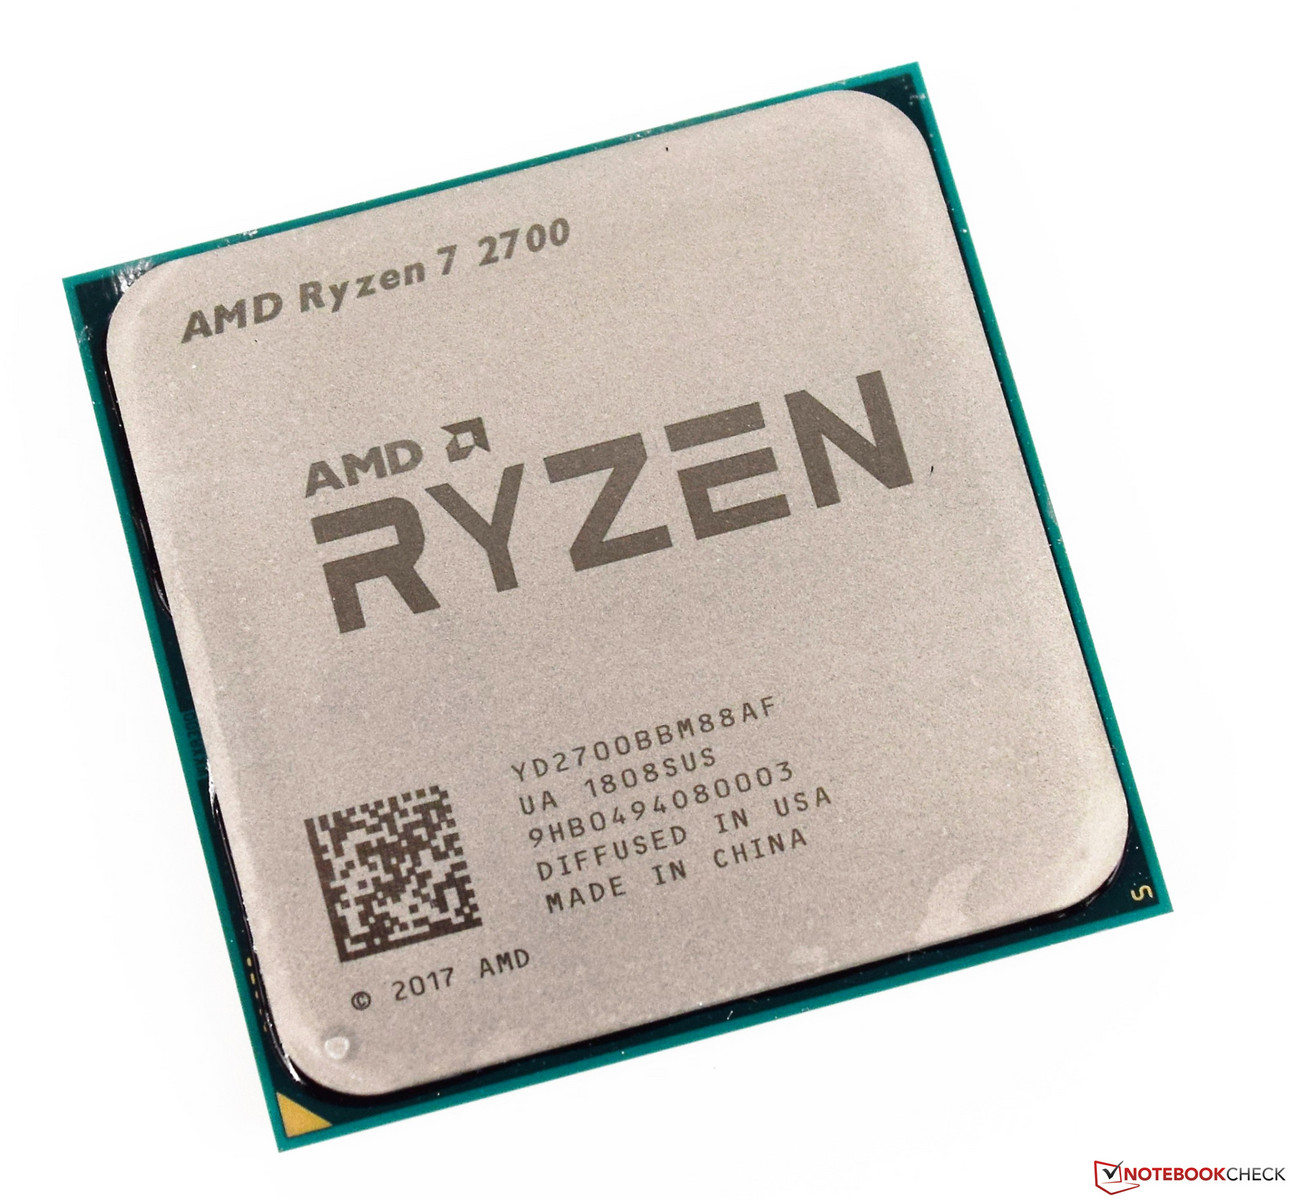 AMD Ryzen 7 2700 vs AMD Ryzen 7 3750H